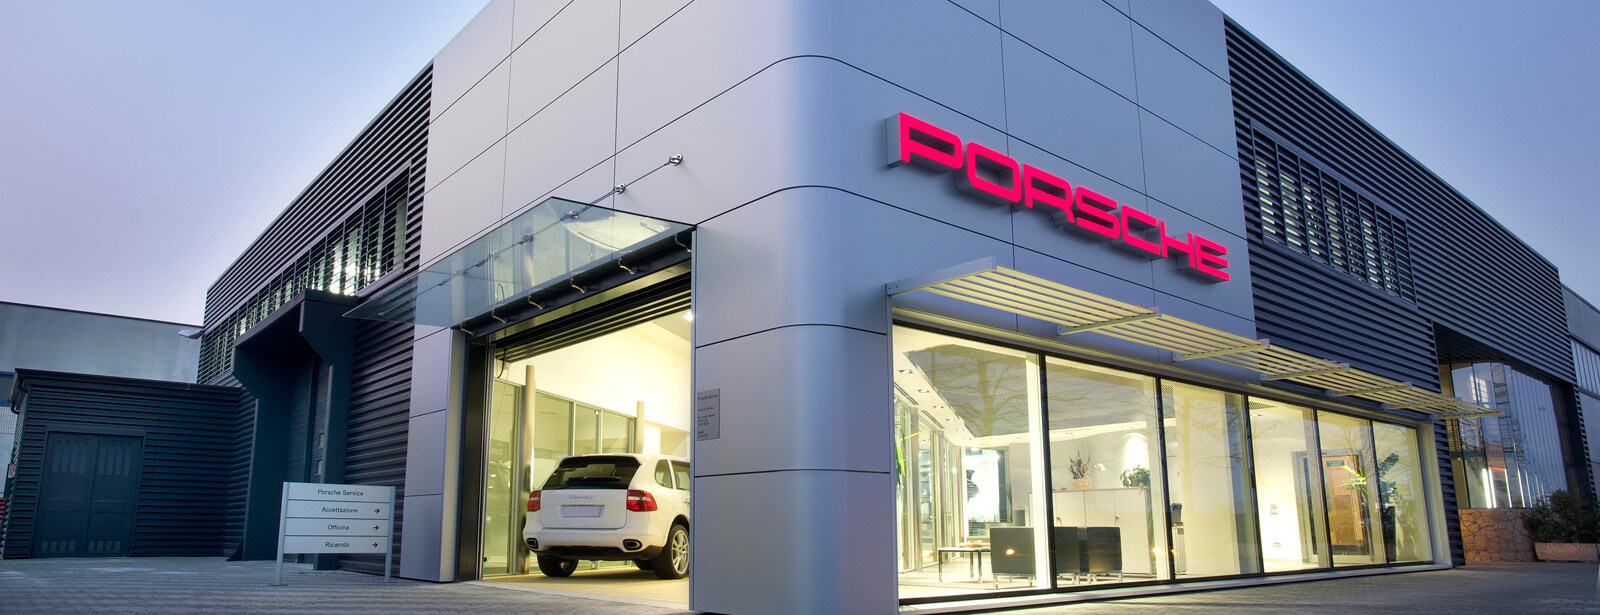 Centro Assistenza Porsche Padova Ovest